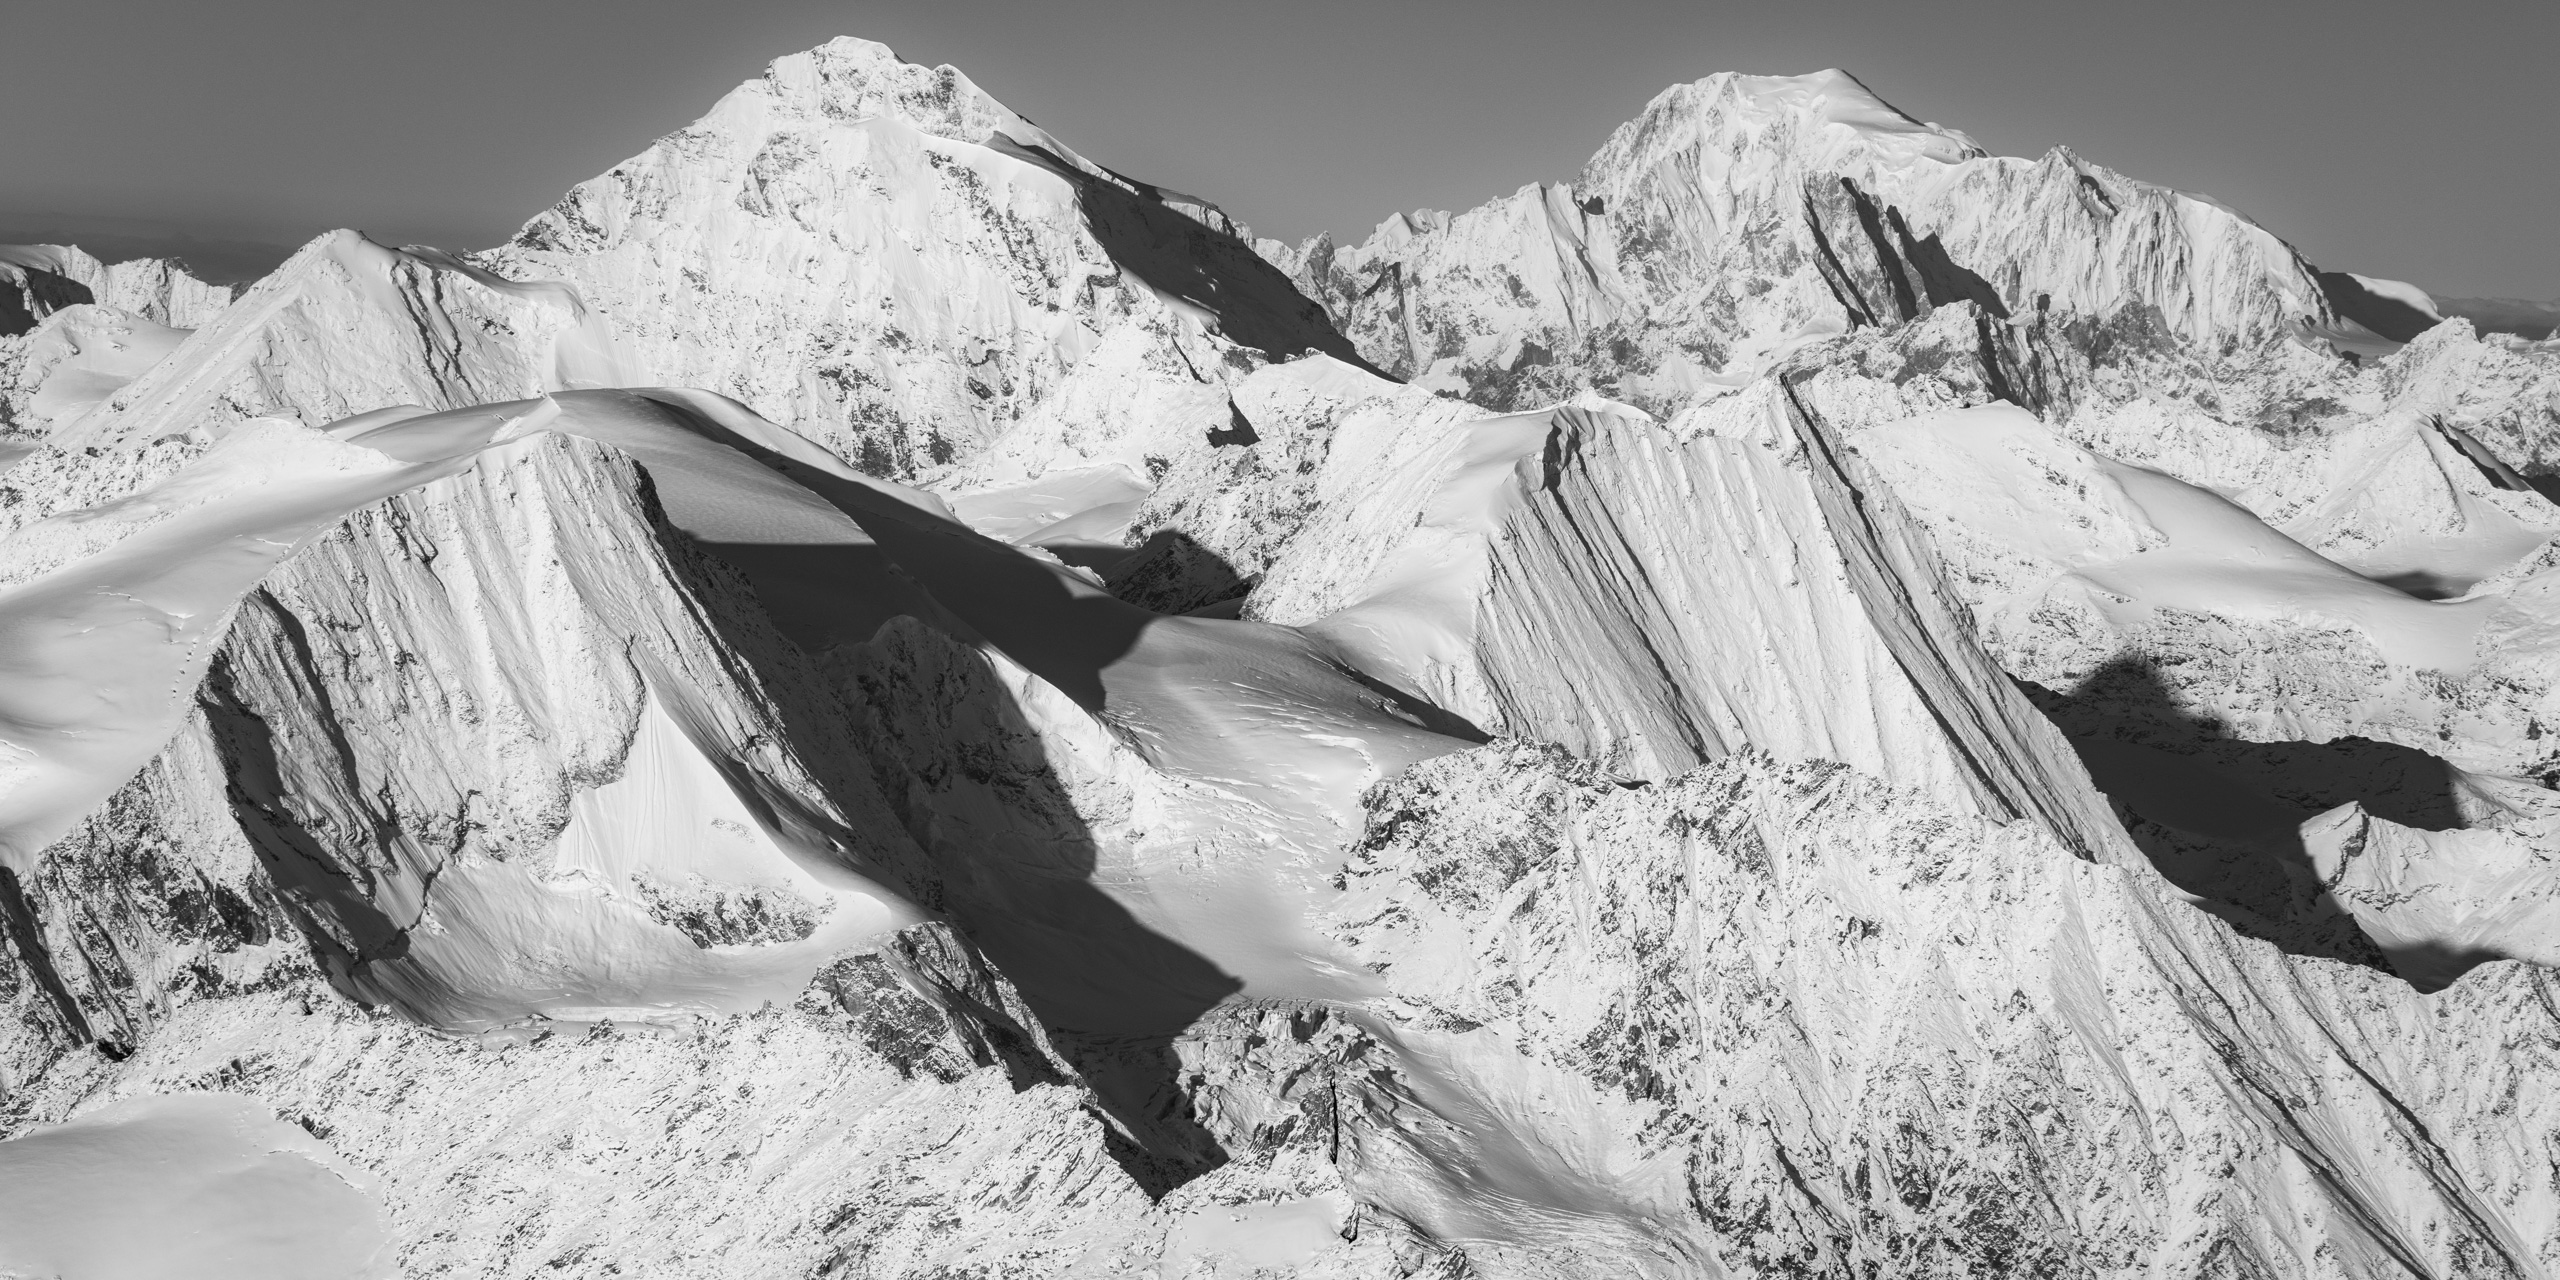 Panorama Mont Blanc et montagne suisse - sommet montagne du val d'Hérens- Verbier - les Combins - Massif du Mont-Blanc- Image paysage montagne neige